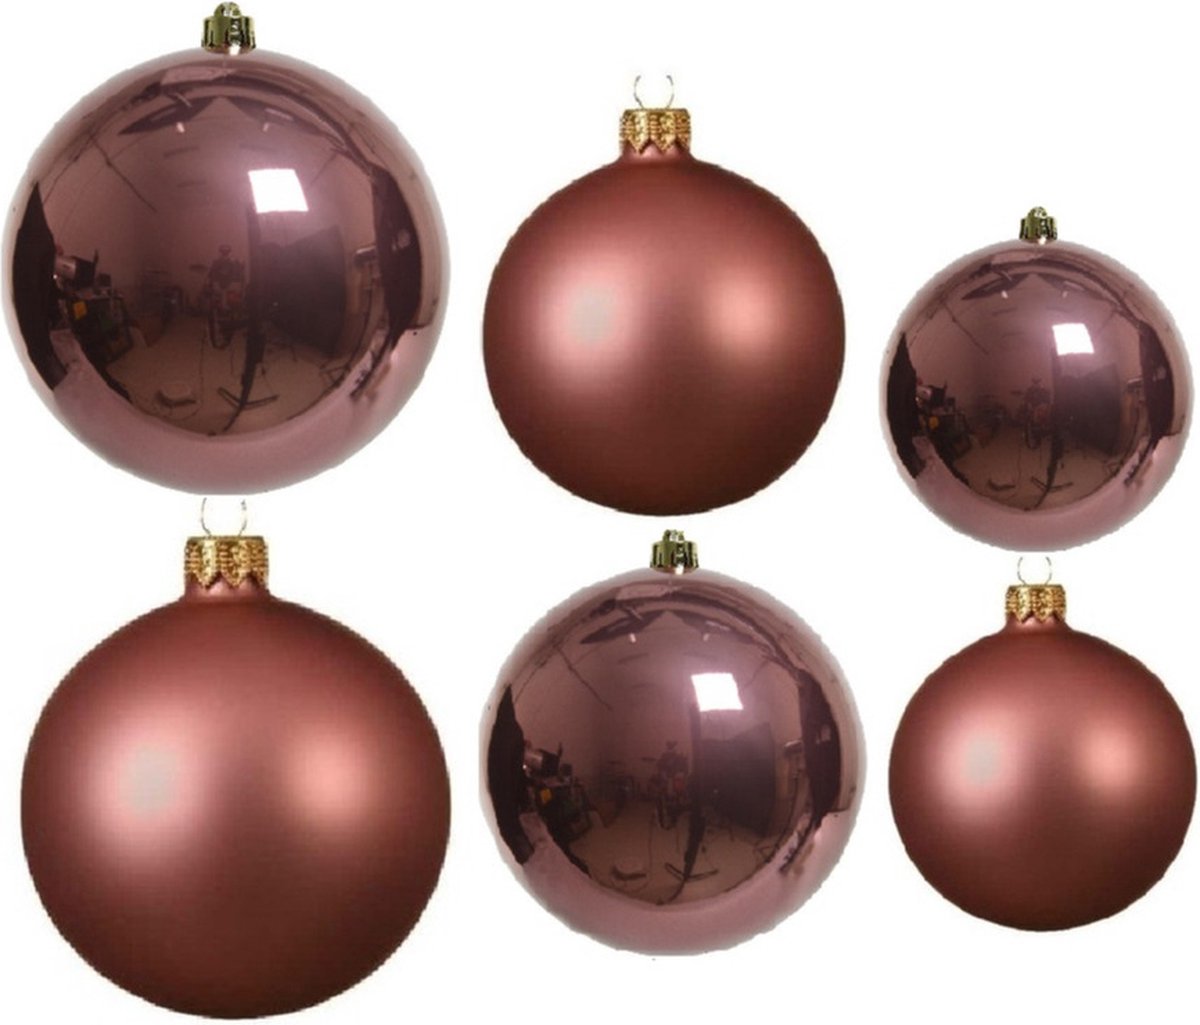 Compleet glazen kerstballen pakket oudroze glans/mat 26x stuks - 10x 6 cm - 12x 8 cm - 4x 10 cm